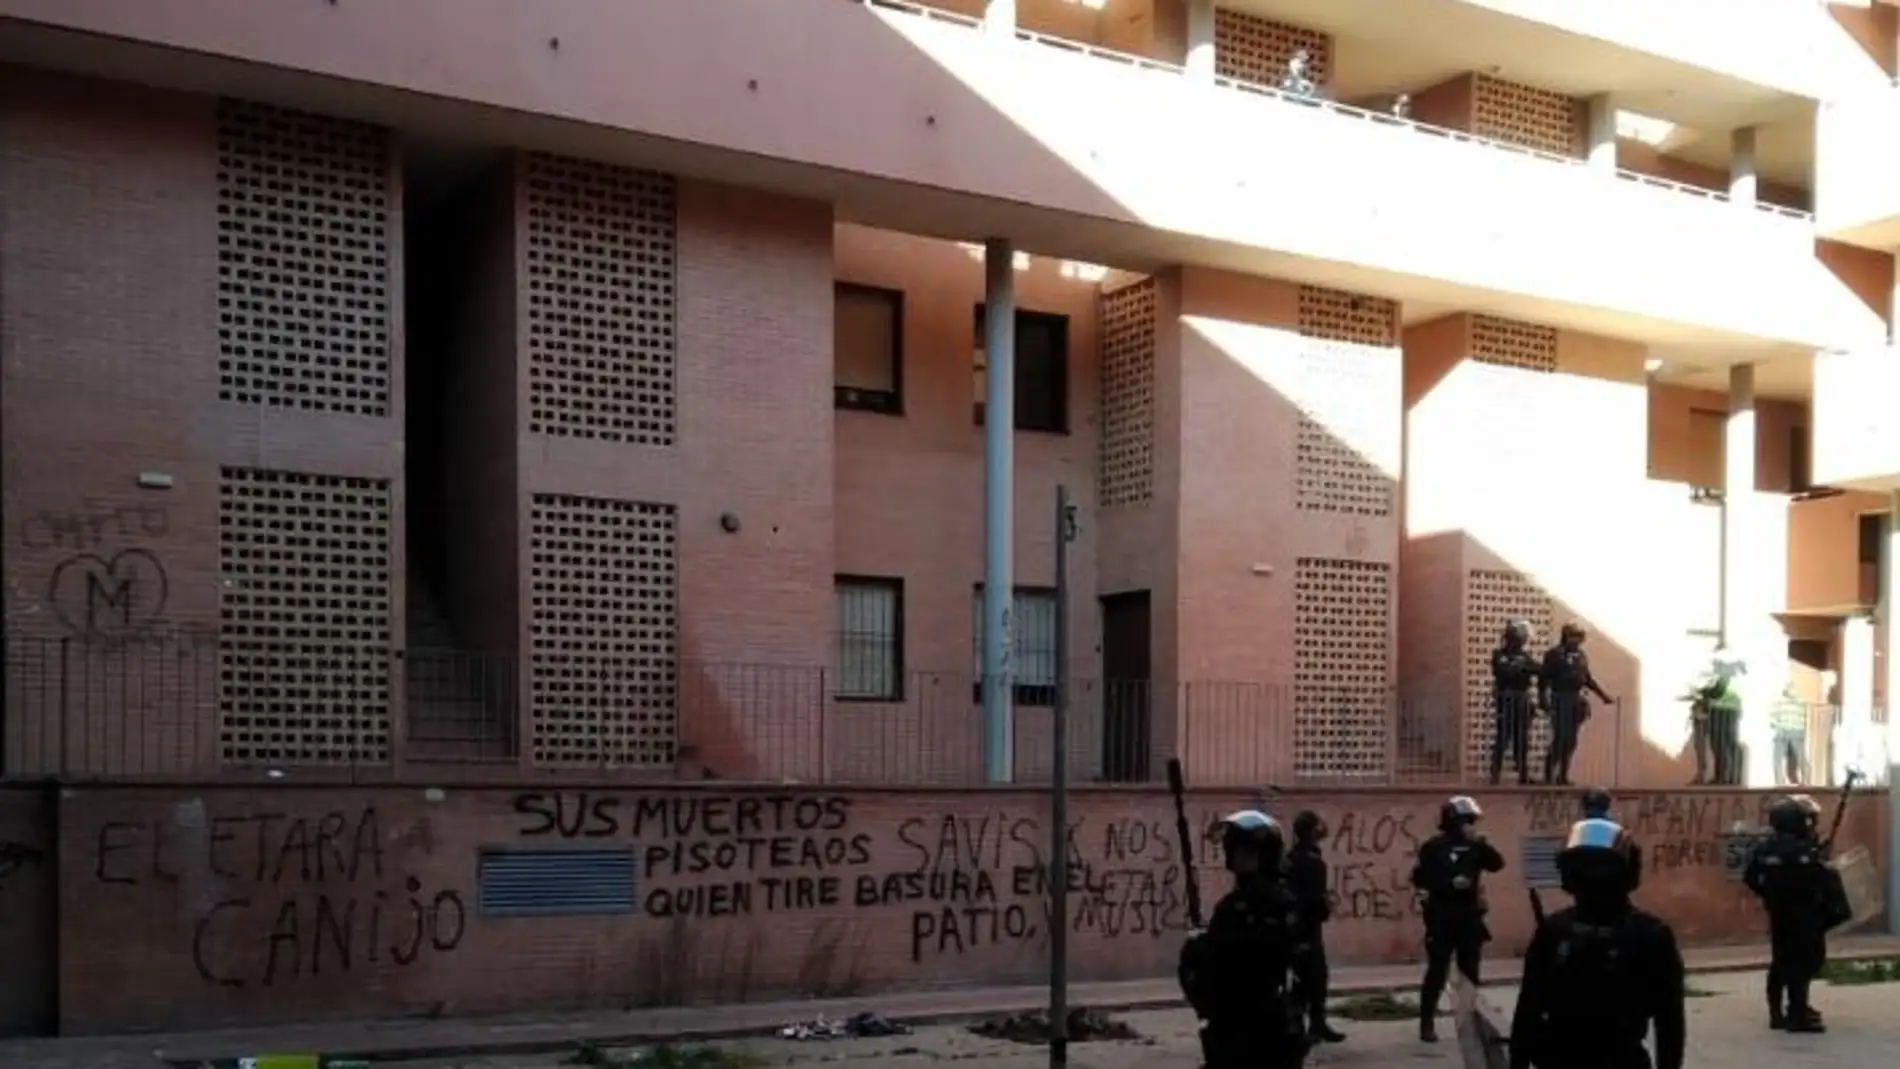 Despliegue policial en un bloque de viviendas en Puertollano